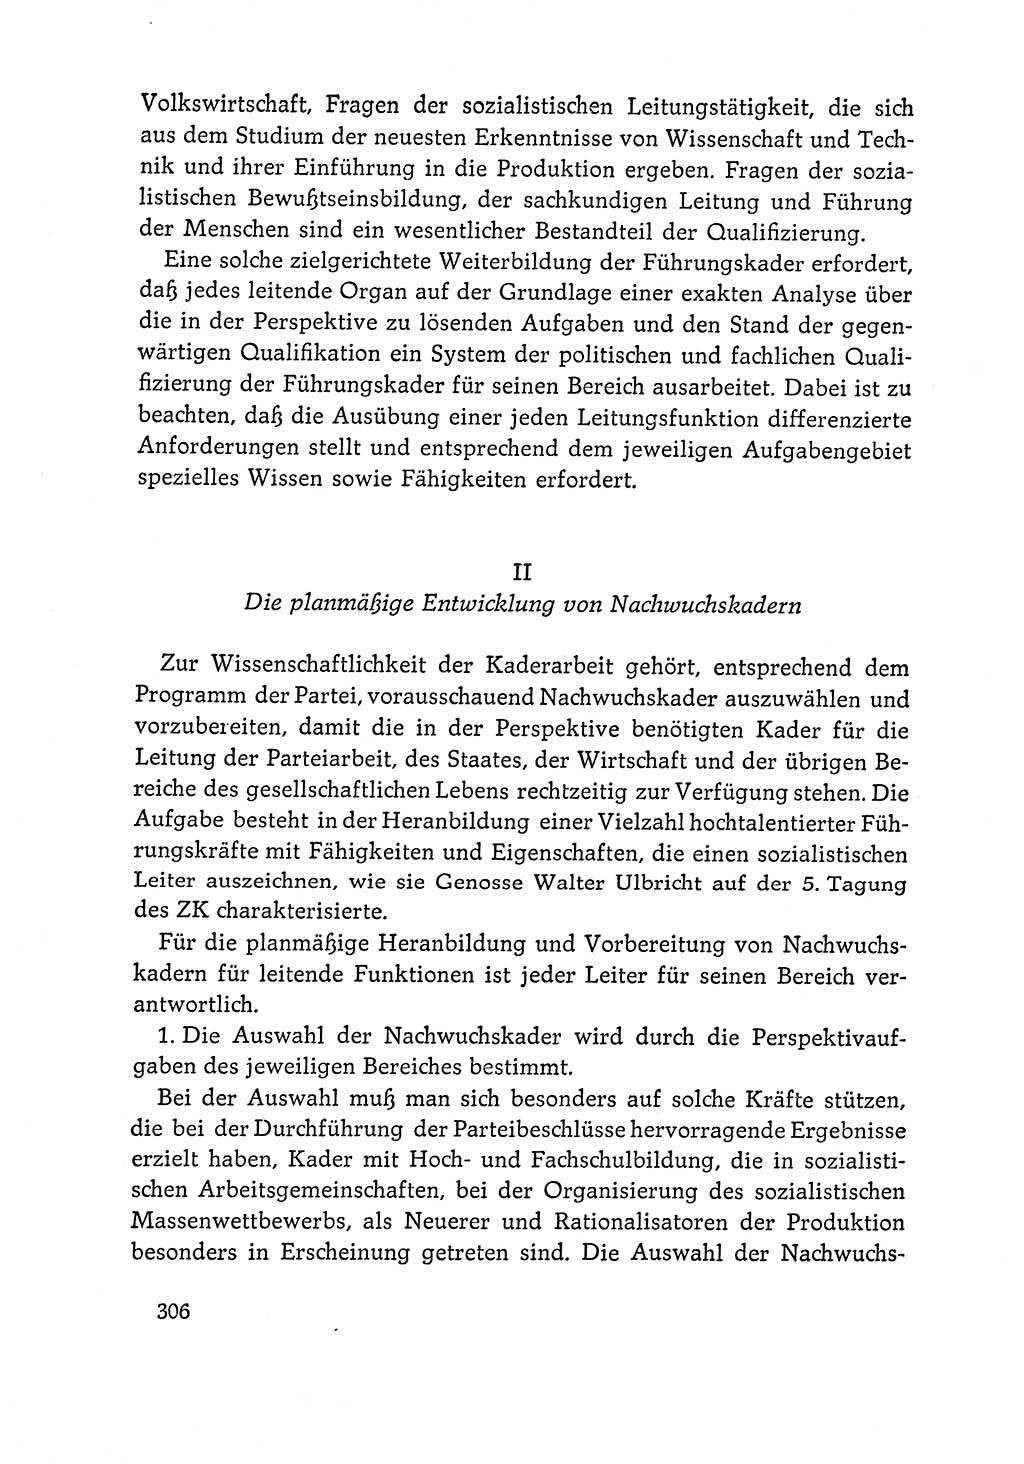 Dokumente der Sozialistischen Einheitspartei Deutschlands (SED) [Deutsche Demokratische Republik (DDR)] 1964-1965, Seite 306 (Dok. SED DDR 1964-1965, S. 306)